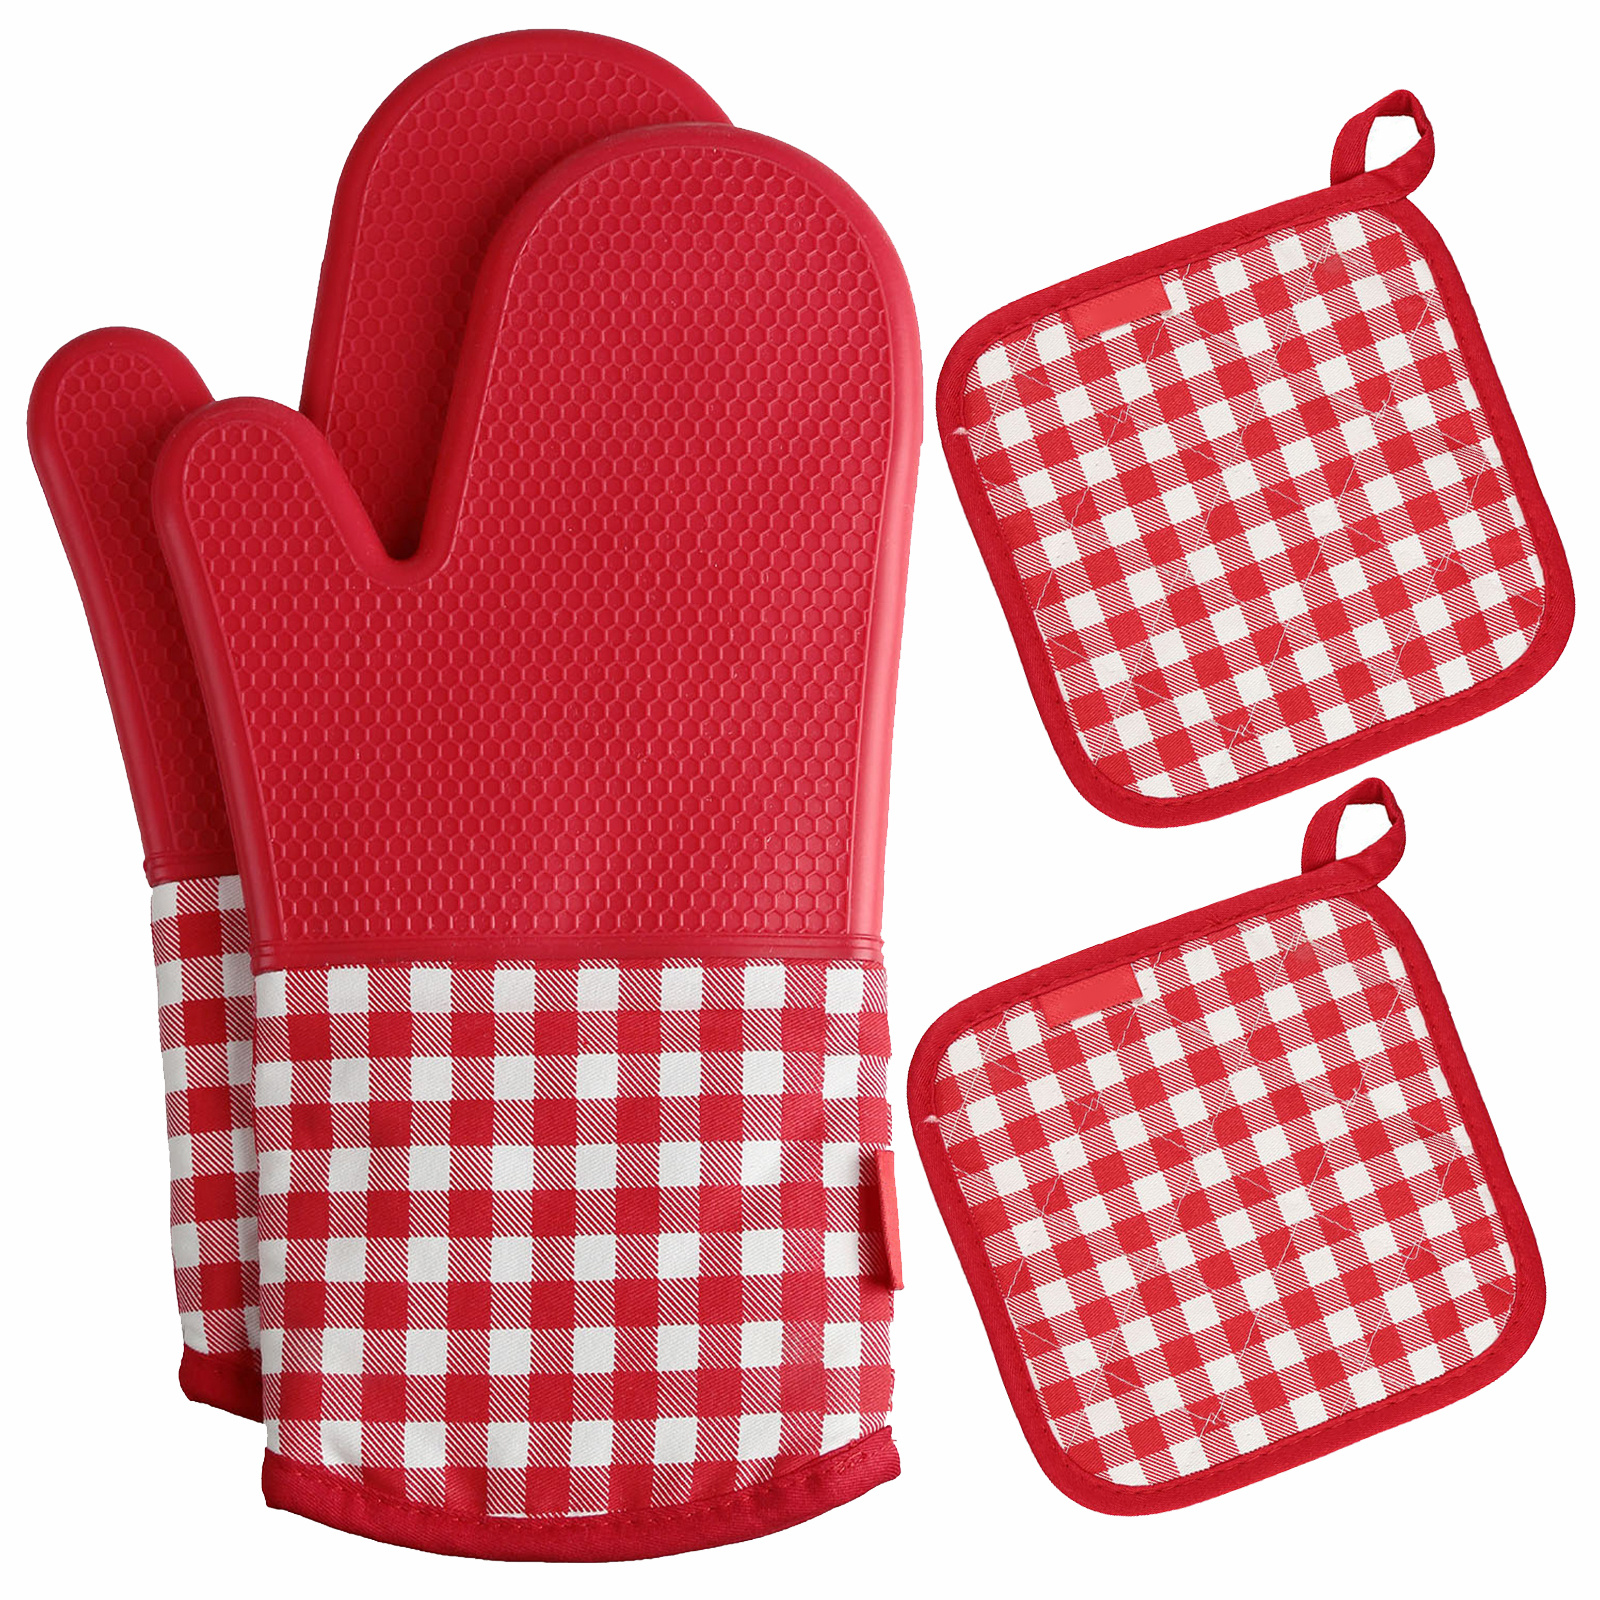 Tradineur - Manoplas de silicona para horno, guantes antideslizantes  resistentes al calor para hornear, cocina, barbacoa, aptas